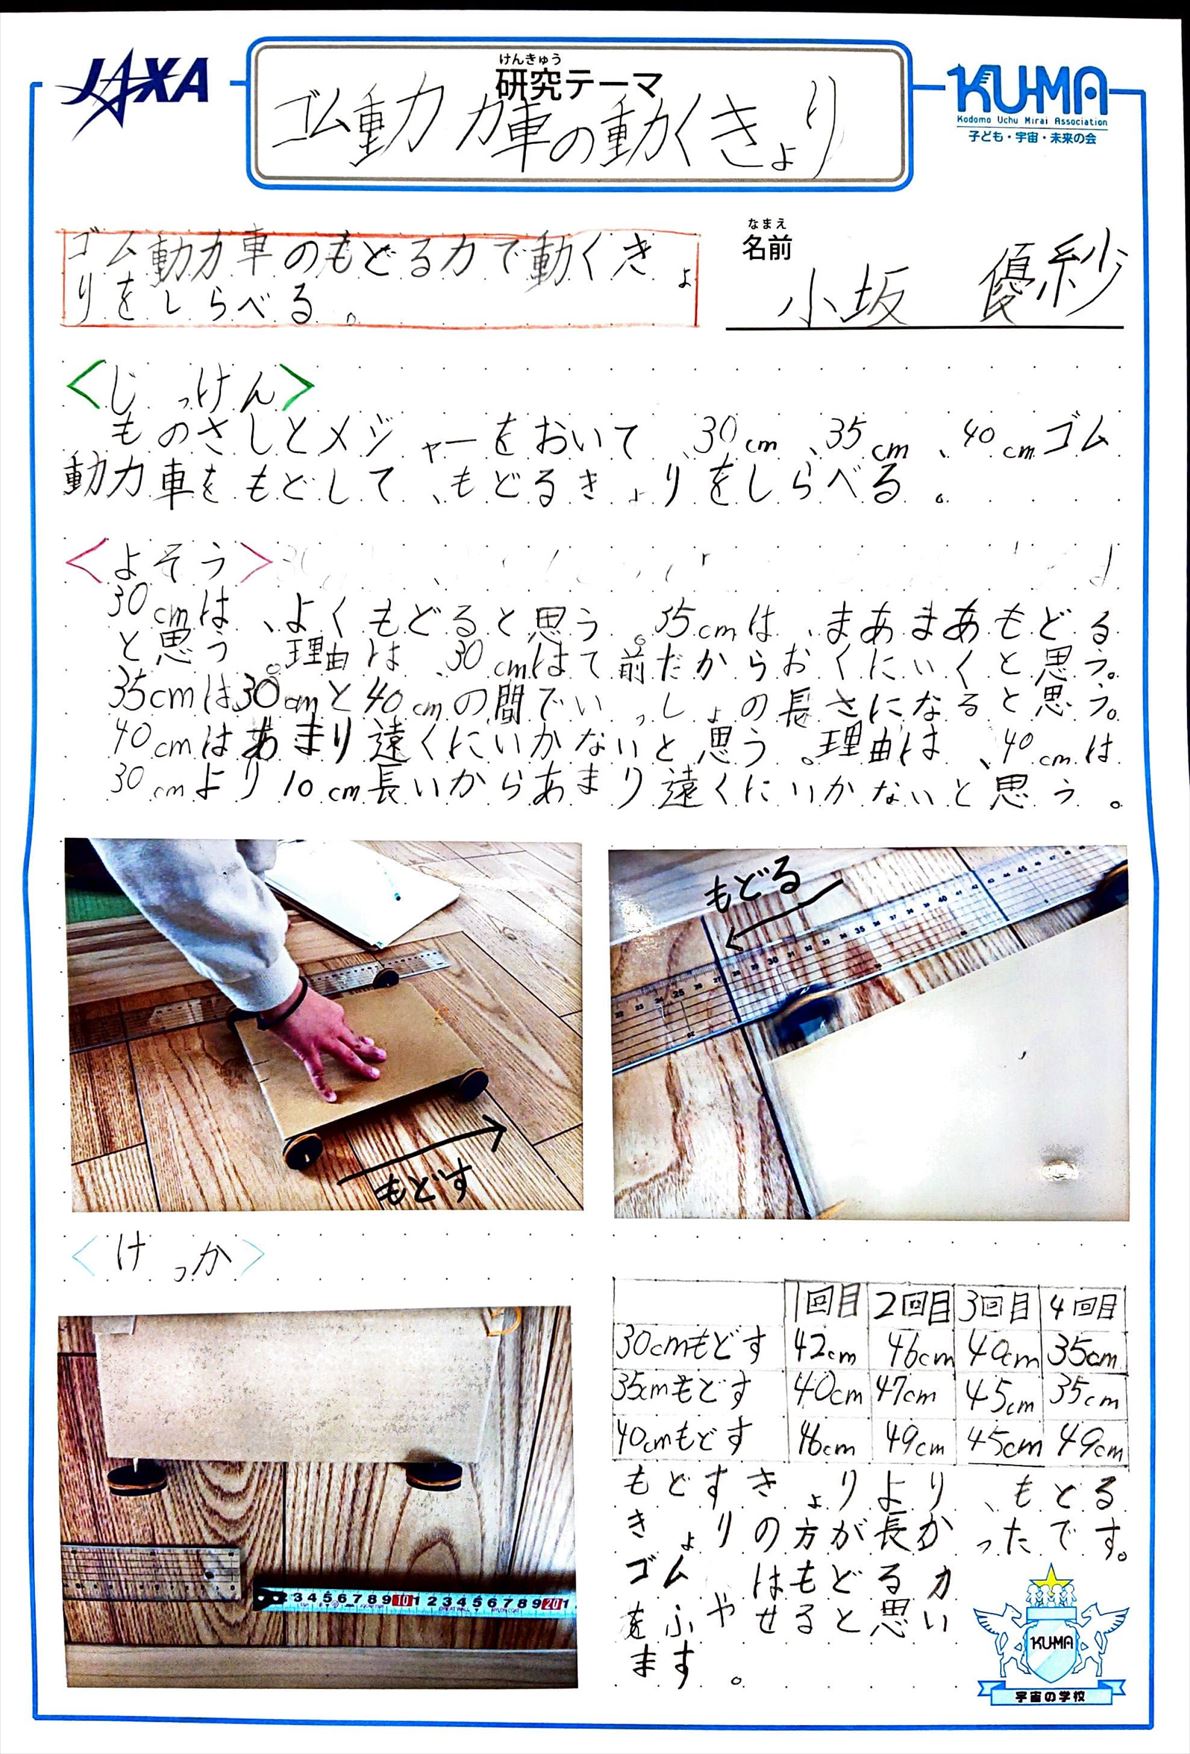 宇宙の学校 家庭学習レポート ishikawa03 04 Jpg